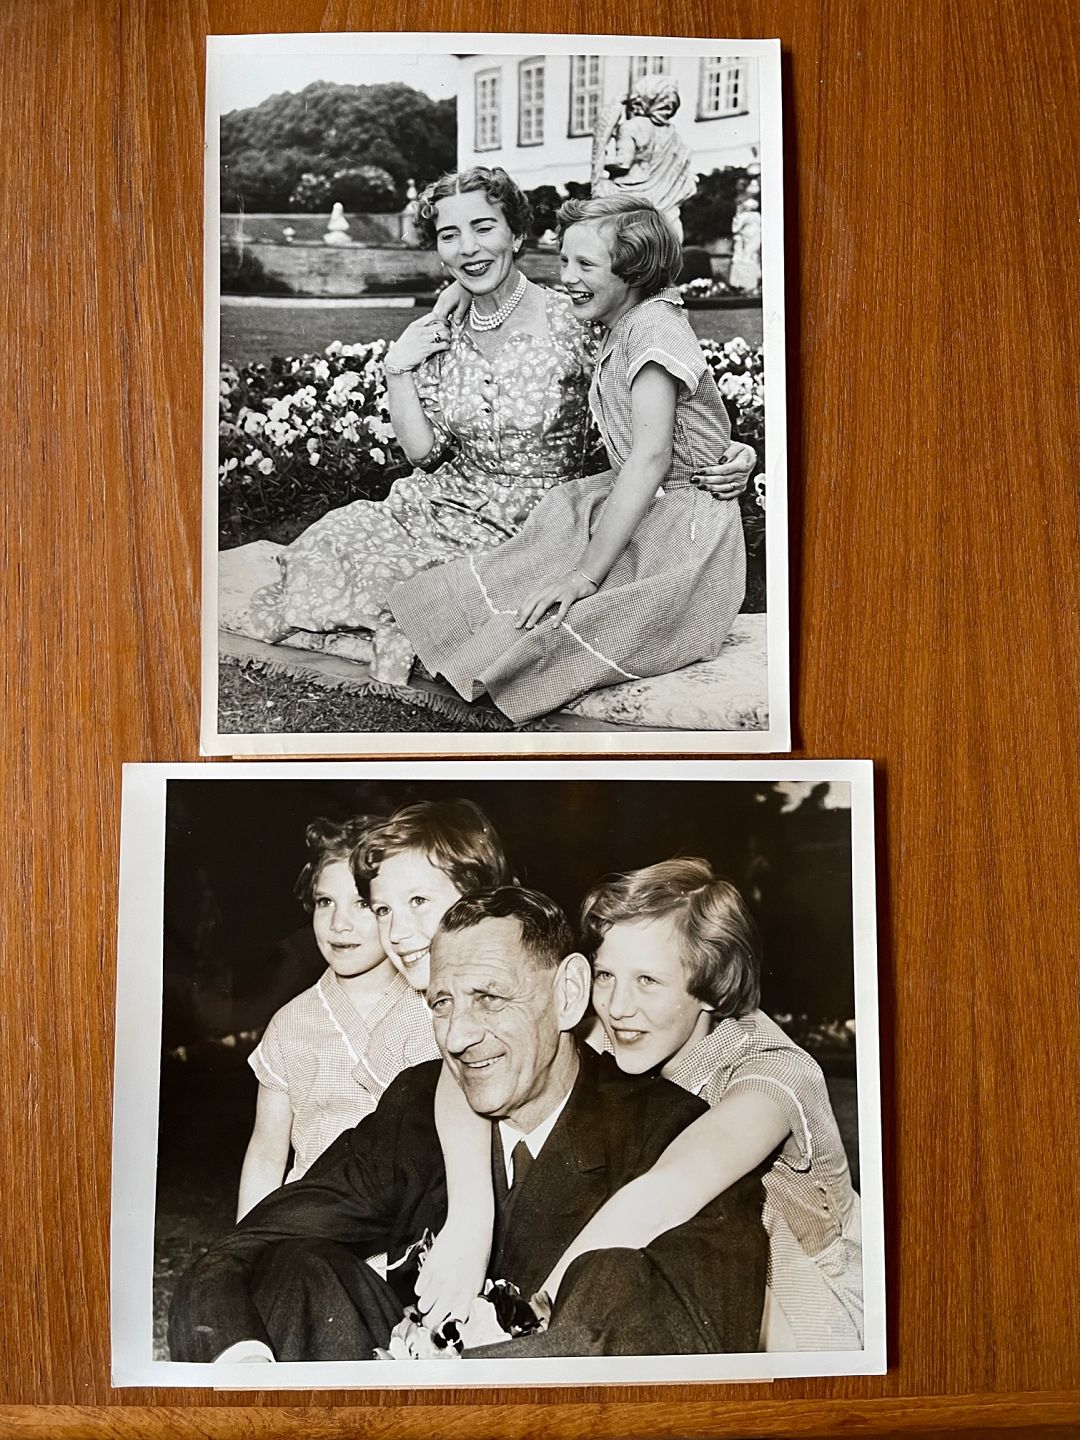 KAD ringen - 2 sort/hvide fotos dronning Margrethe fra 1953, kort efter vedtagel - 2 originale fotos af dronning Margrethe fra 1953, kort efter vedtagel